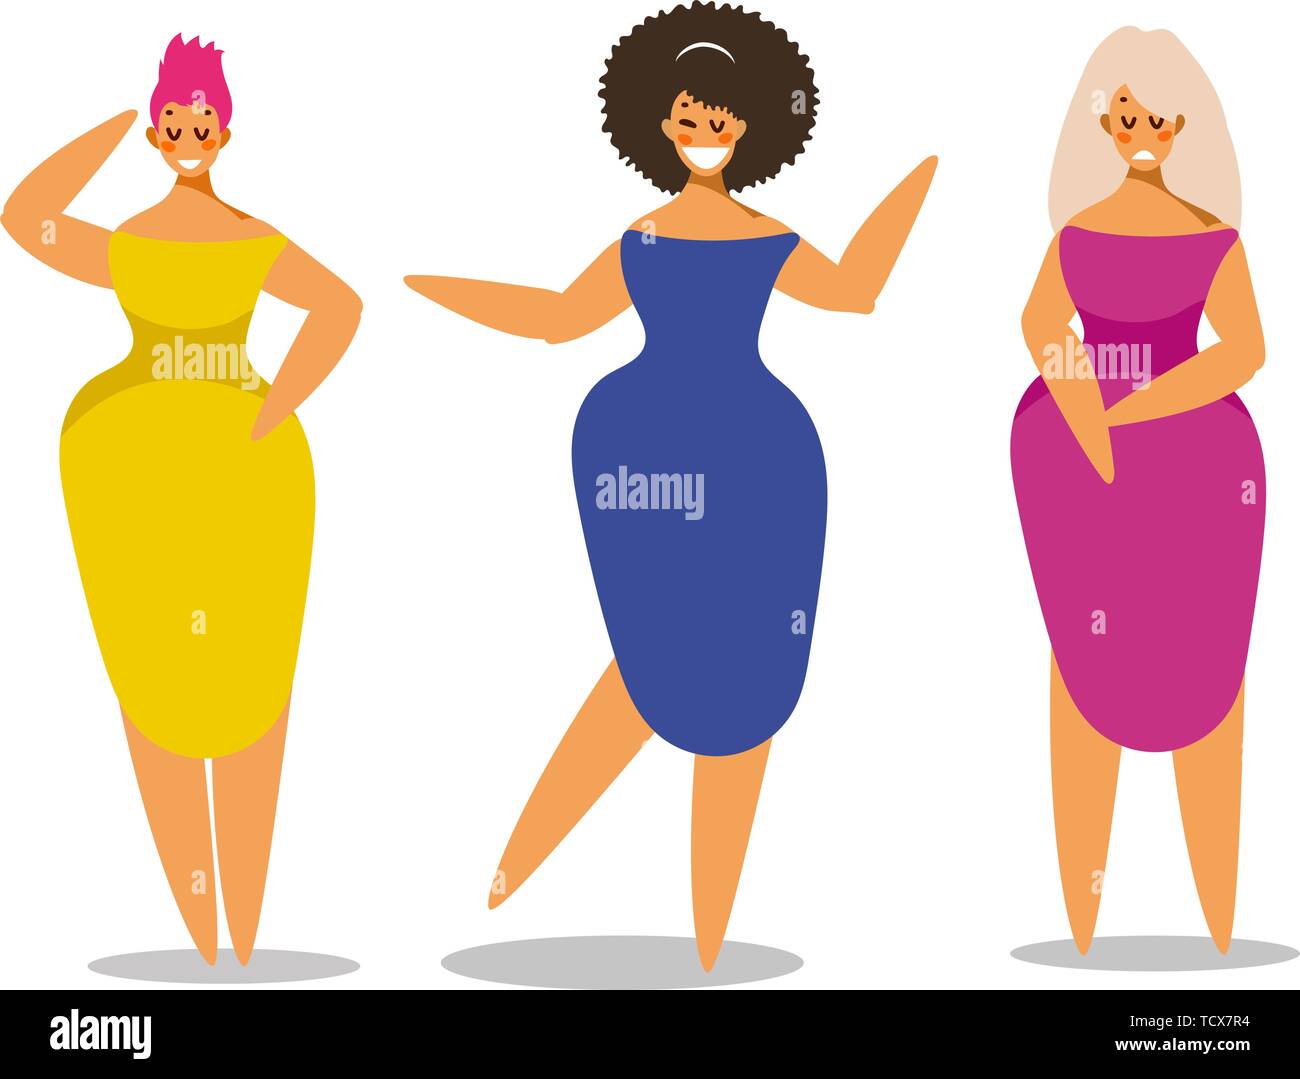 Einstellen der Frauen in eleganten Kleid in unterschiedlichen Posen. Zeichensatz für Ihr Projekt. Vector Illustration im flachen Stil. Stock Vektor